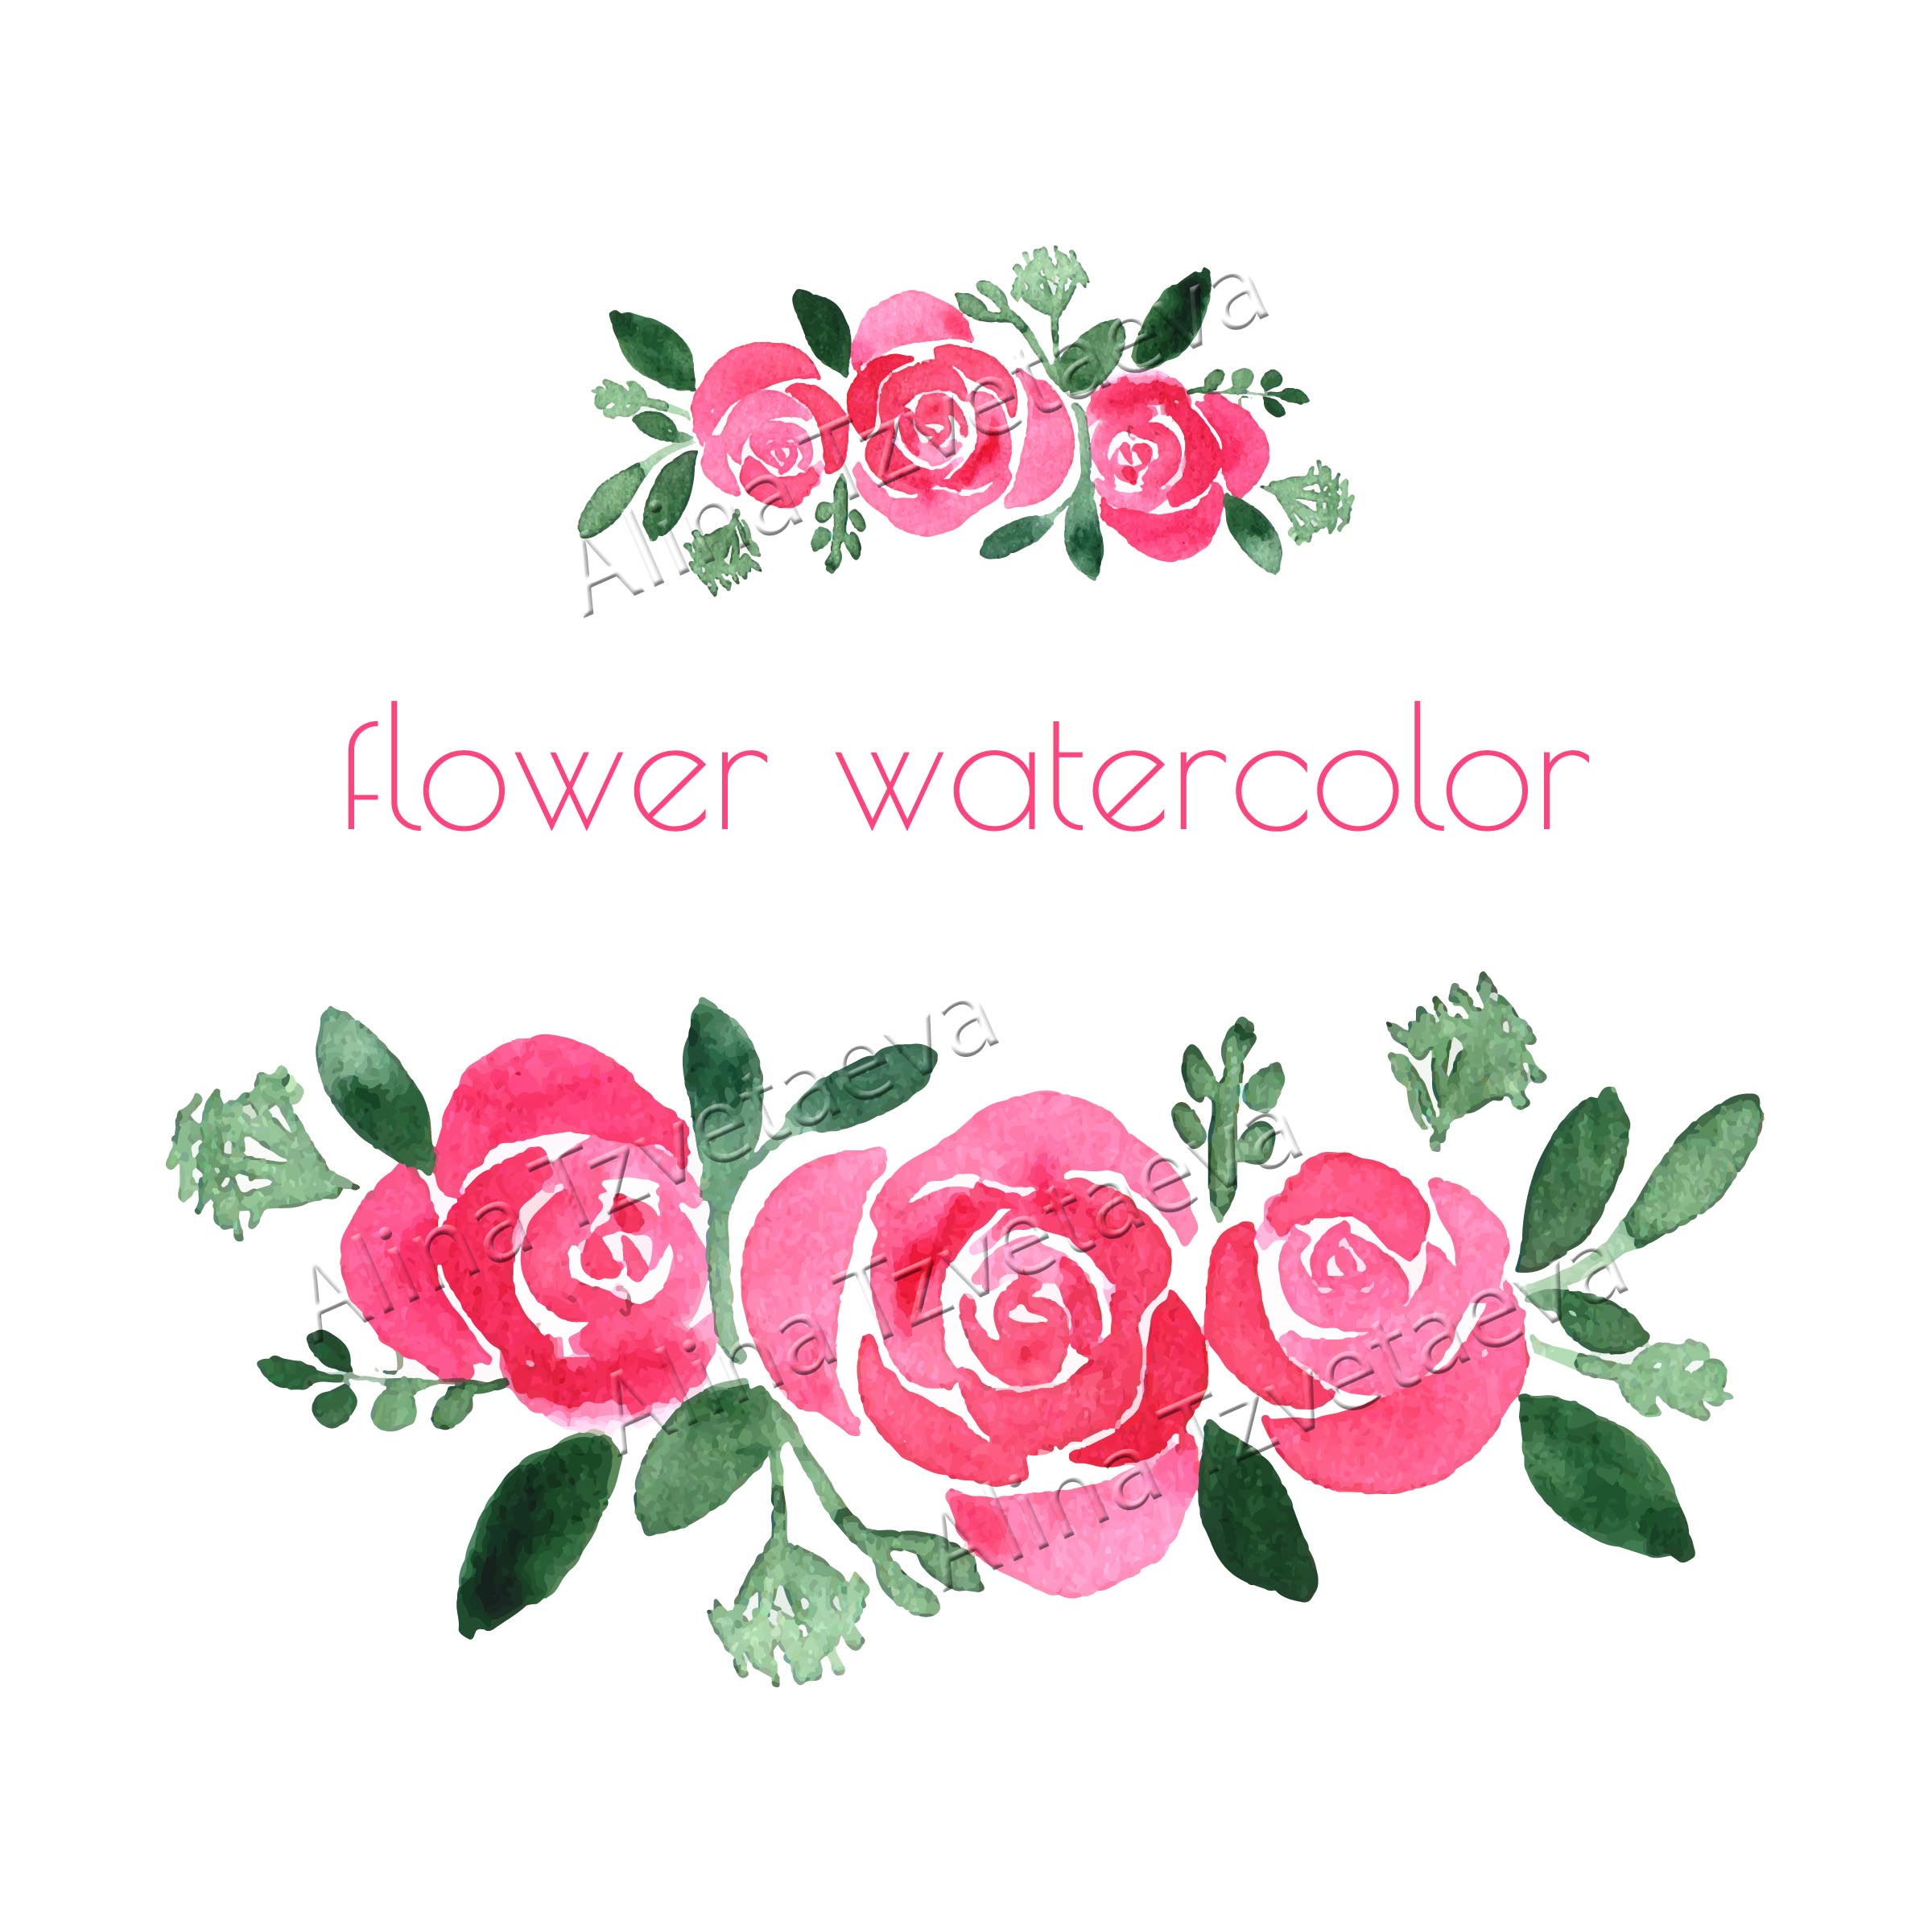 Flowerwatercolorwatermark